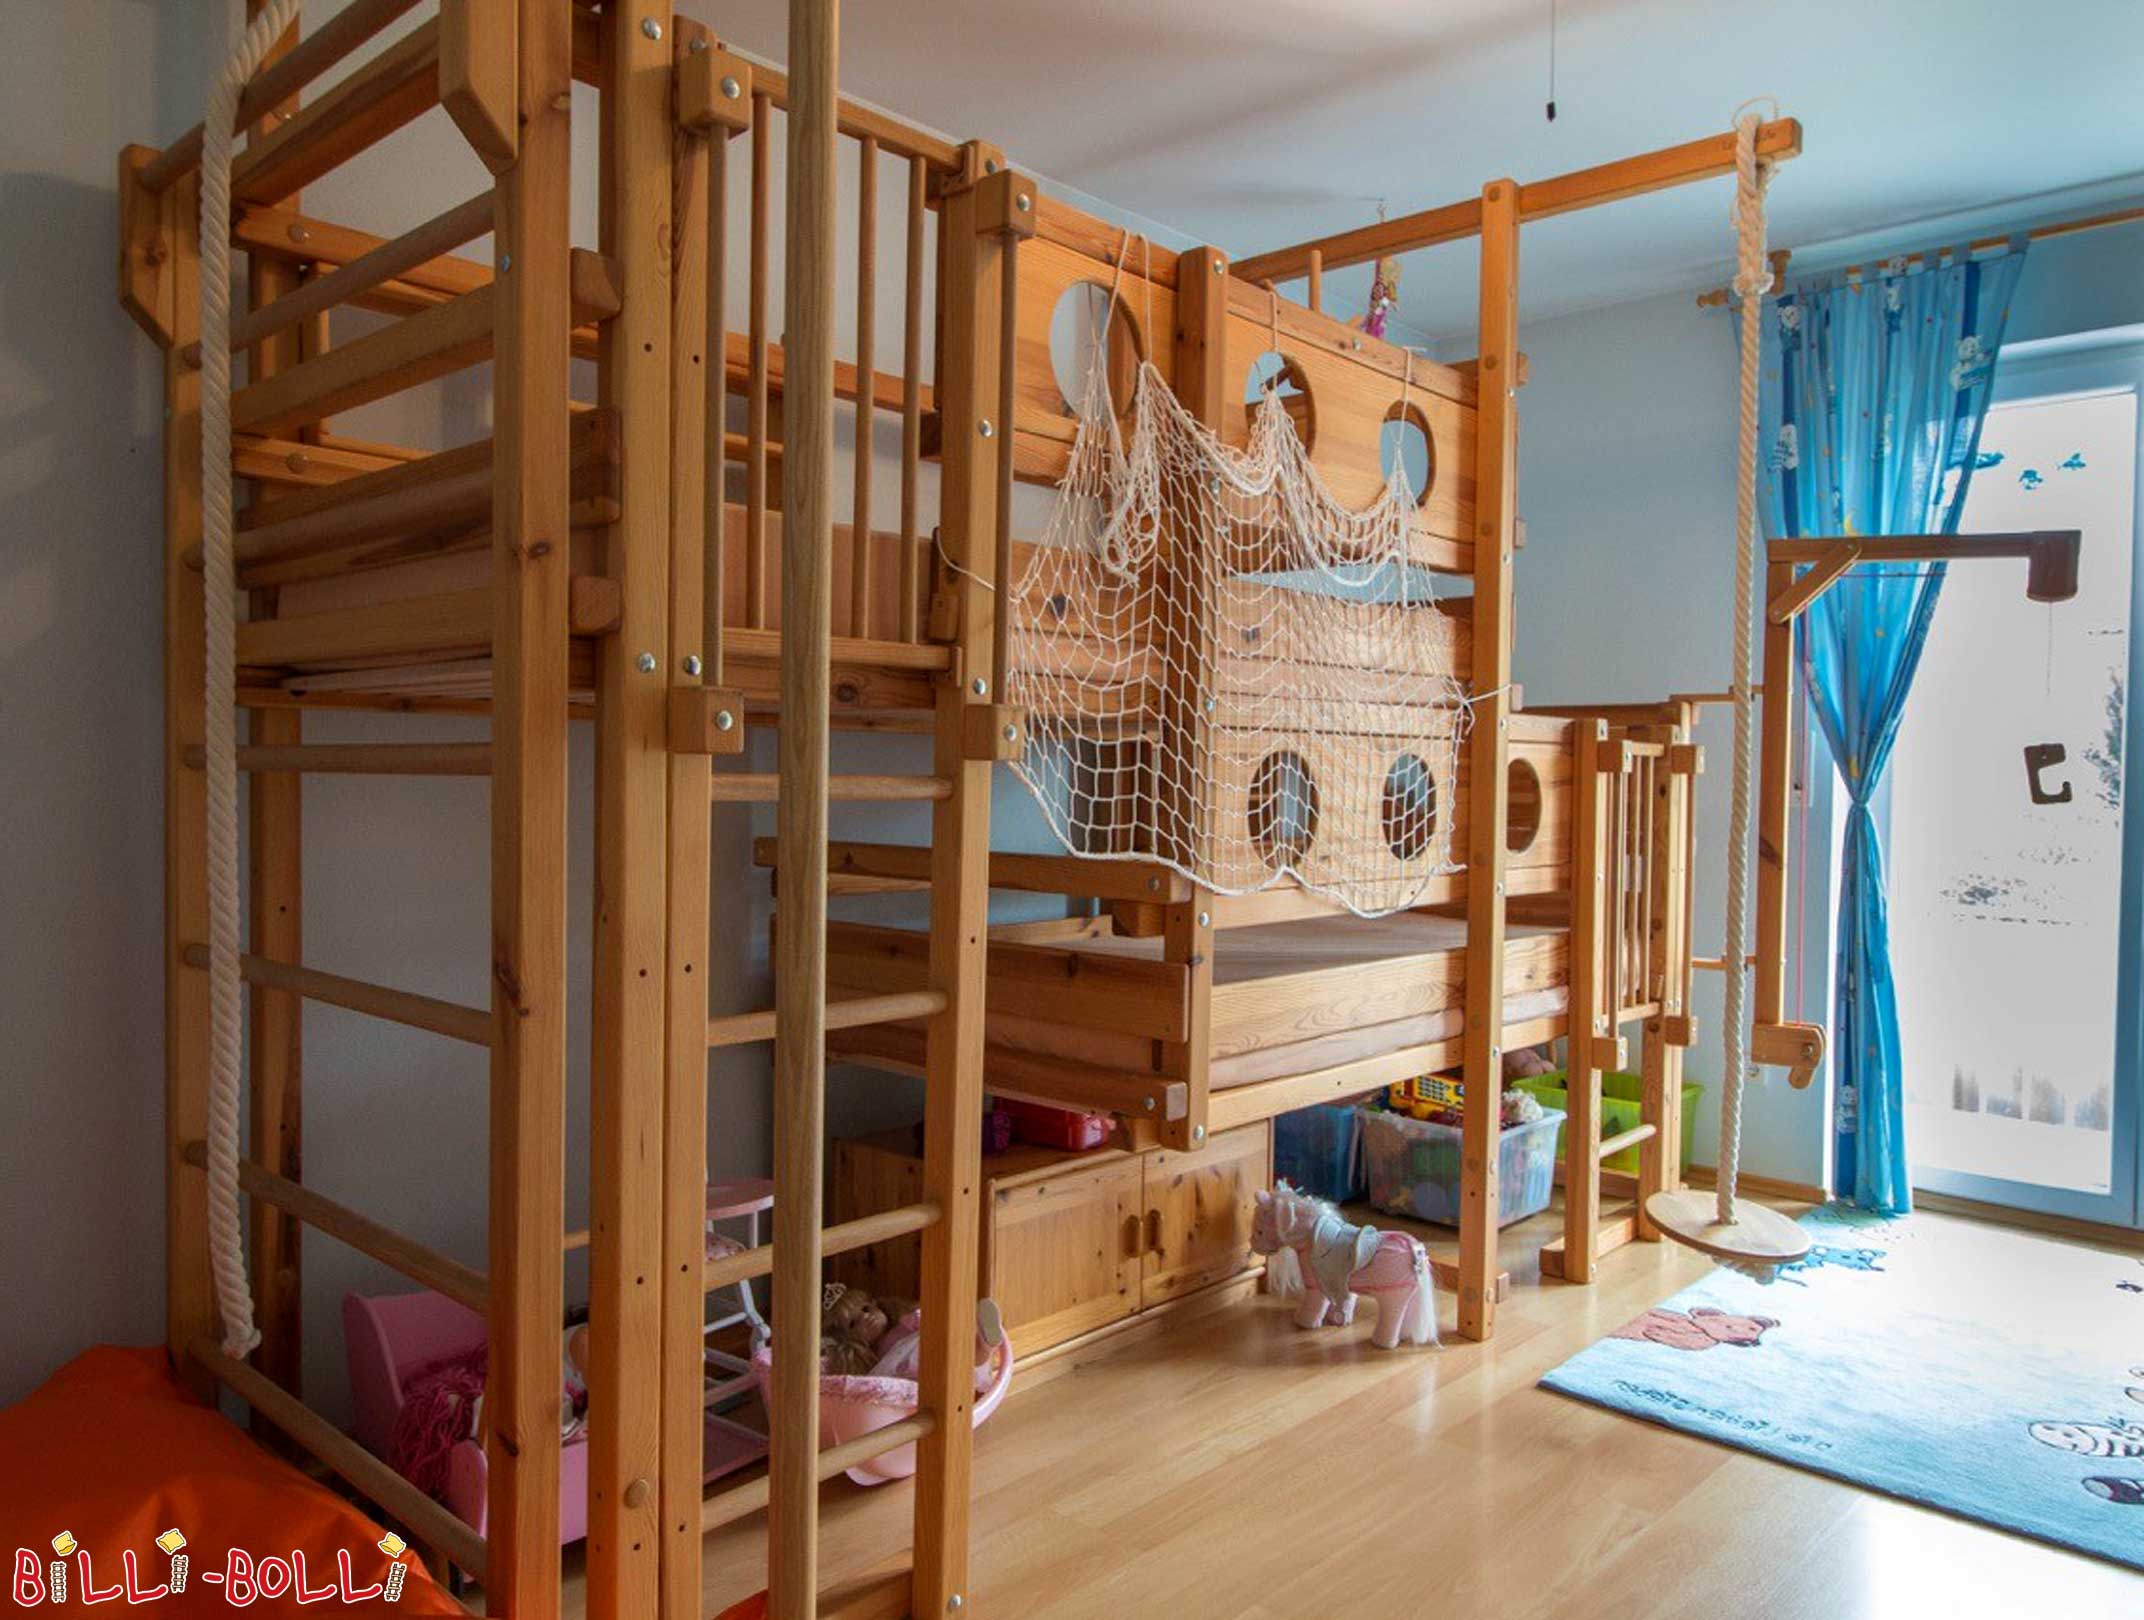 Lits mezzanines en bois : ce lit superposé est un double lit mezzanine pour 2 enfants (Lits superposés avec deux couchages en hauteur)